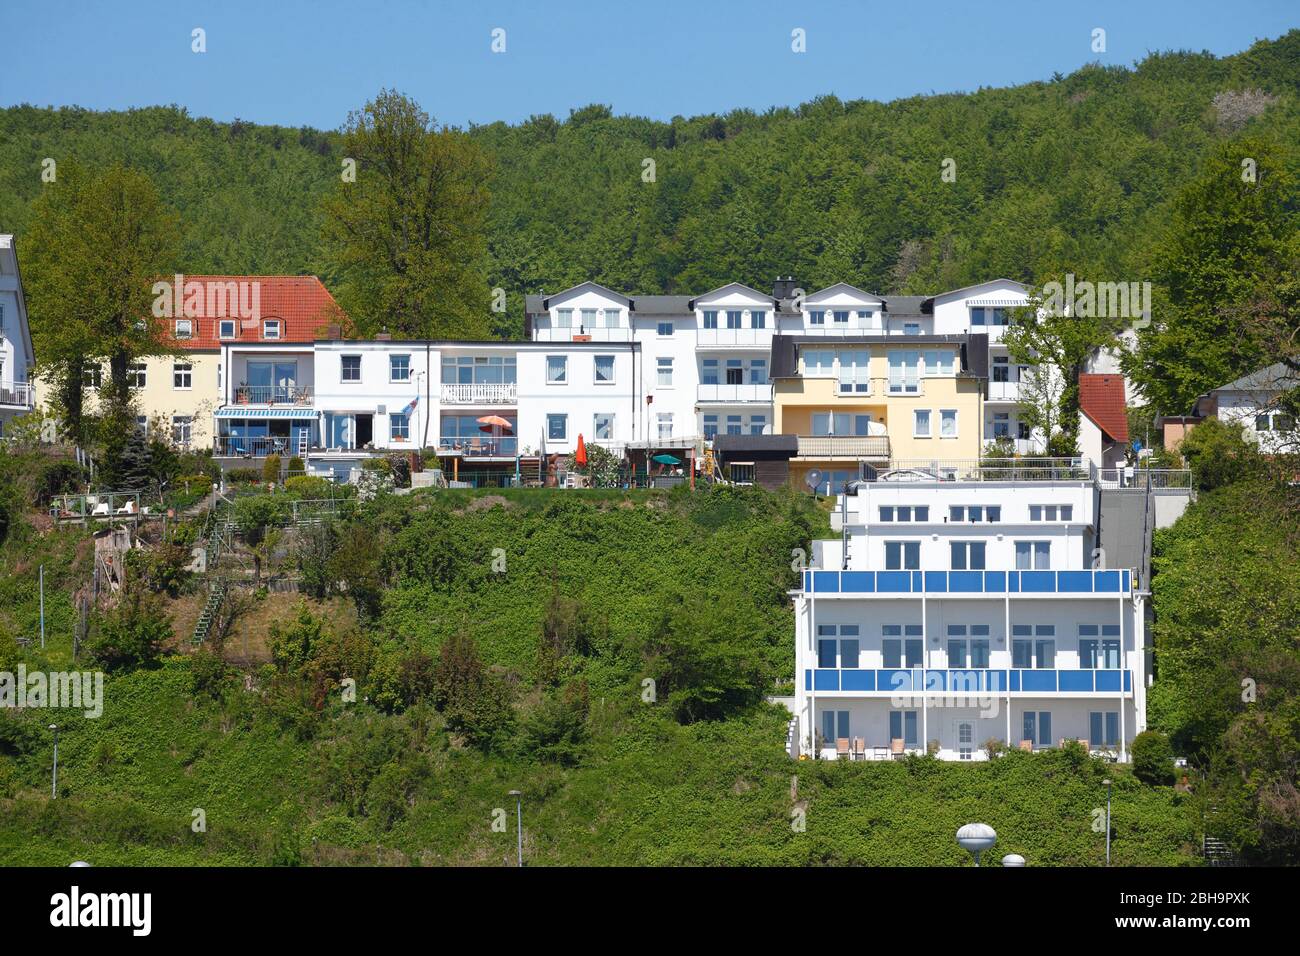 Wohngebäude und Wald, Sassnitz, Insel Rügen, Mecklenburg-Vorpommern, Deutschland, Europa Stock Photo